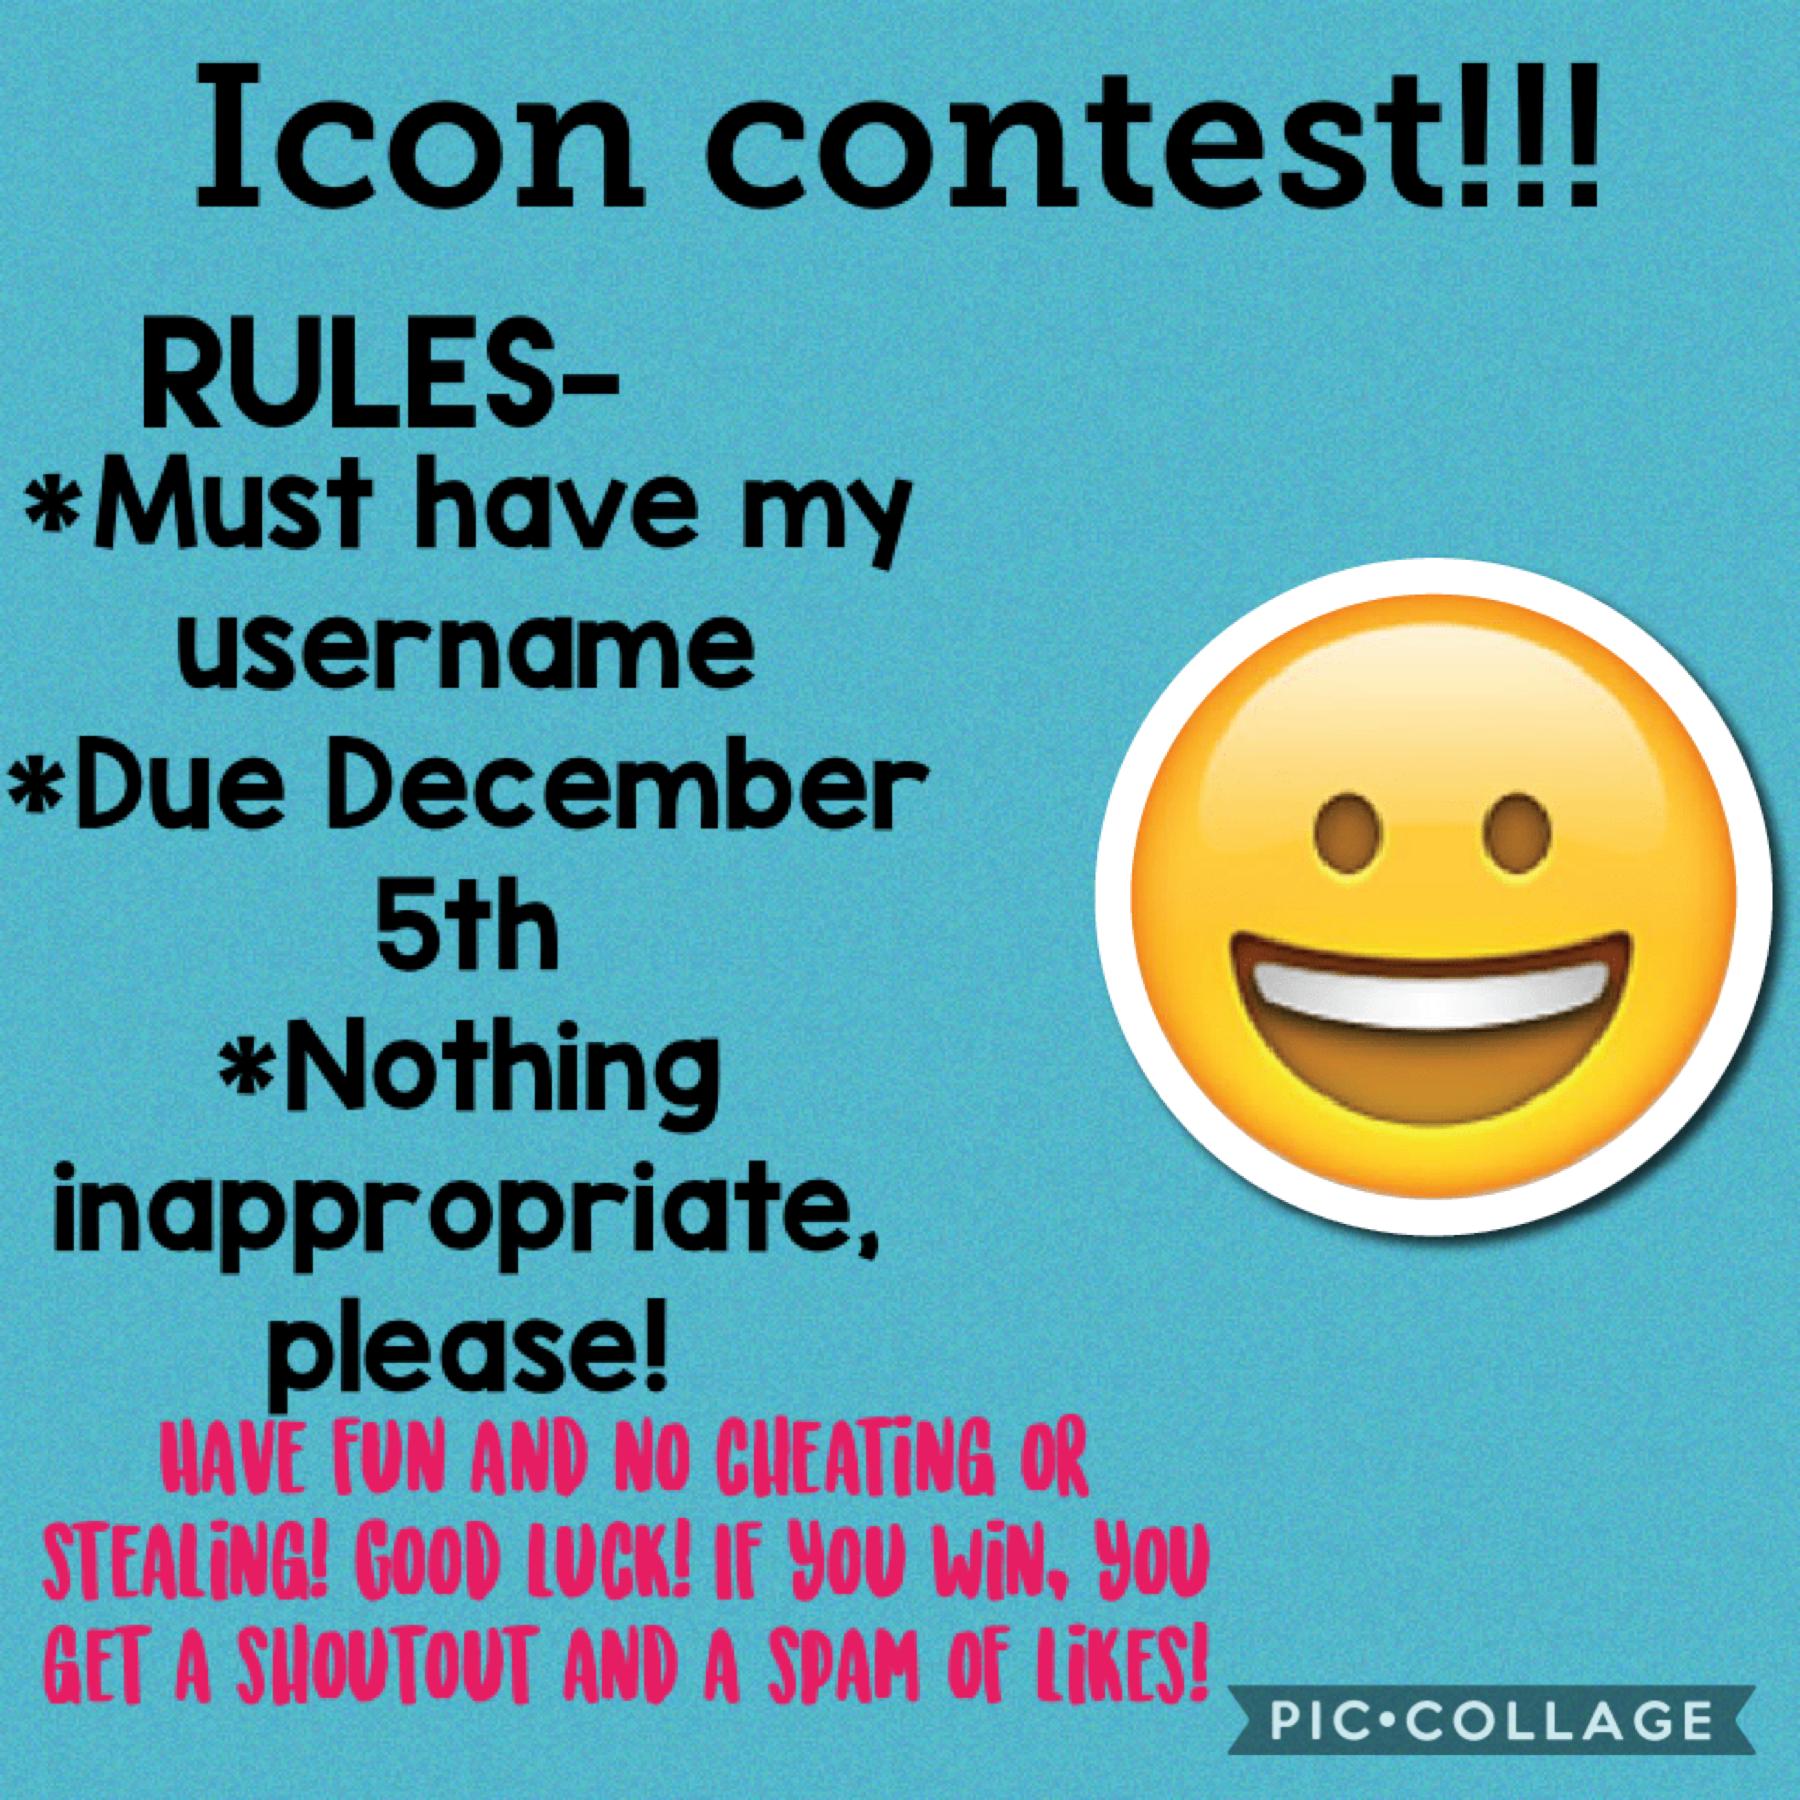 Contest!! Please enter!! 😀